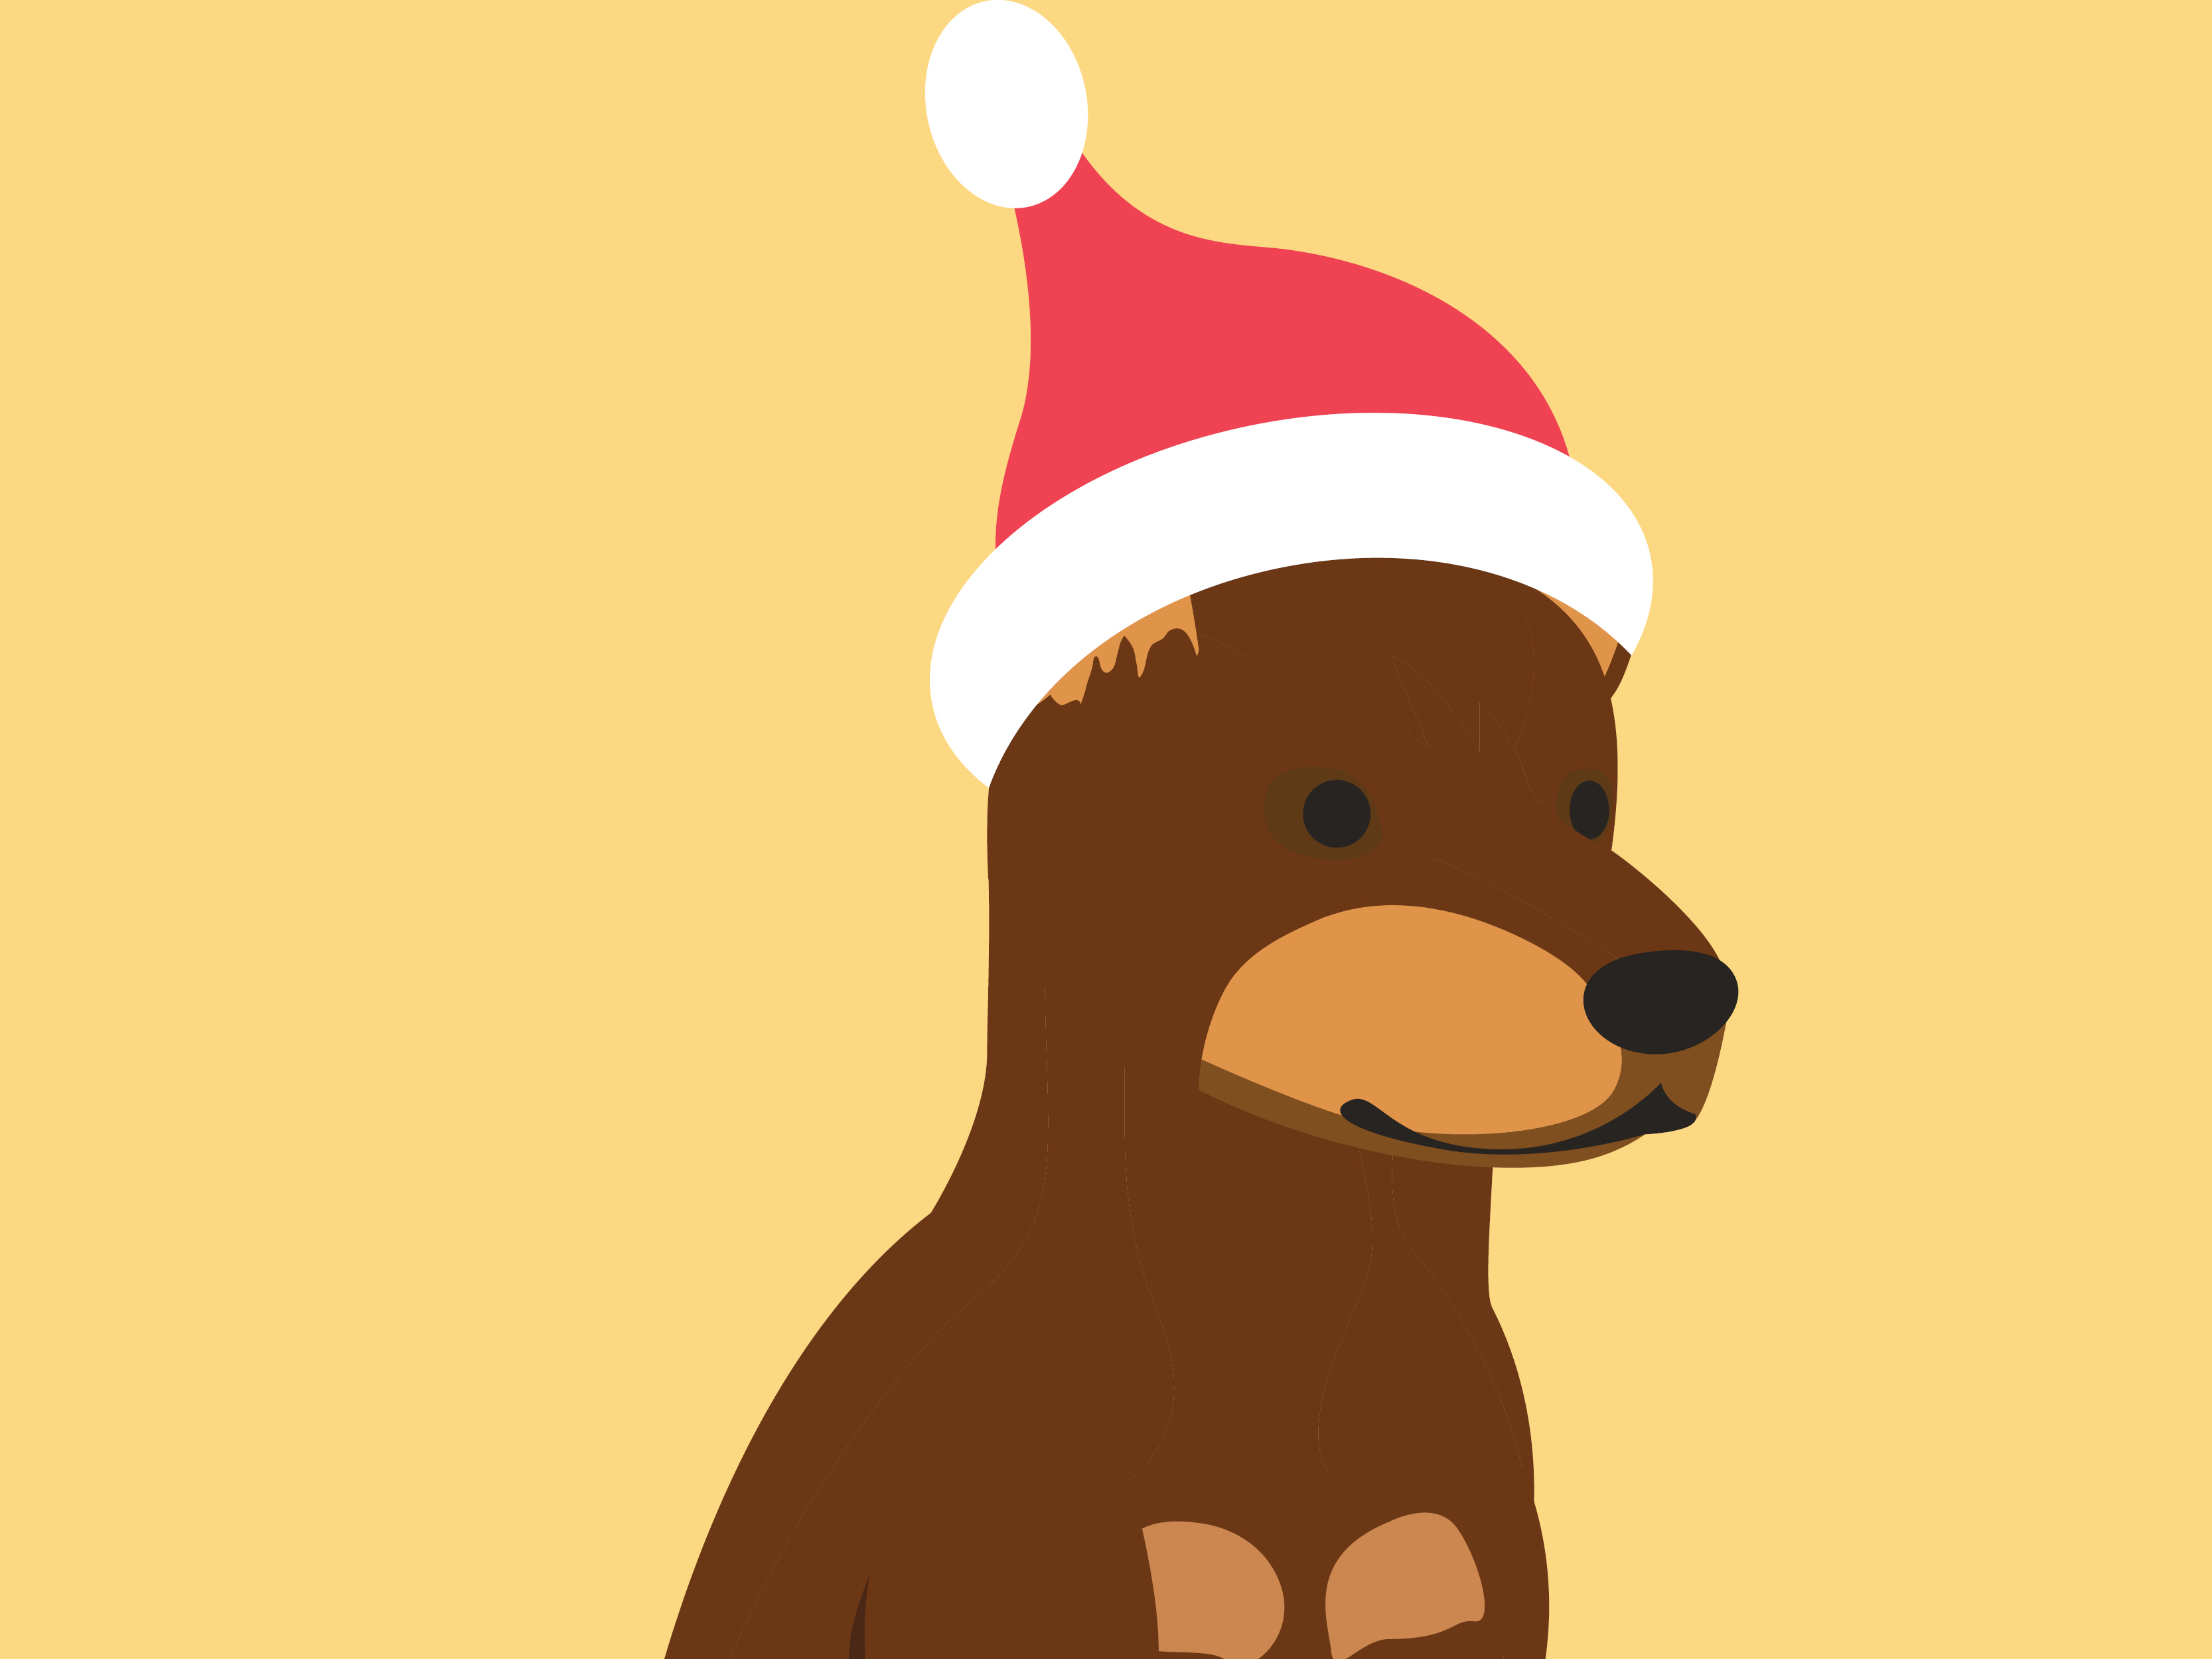 Illustration of a dog in a Santa hat